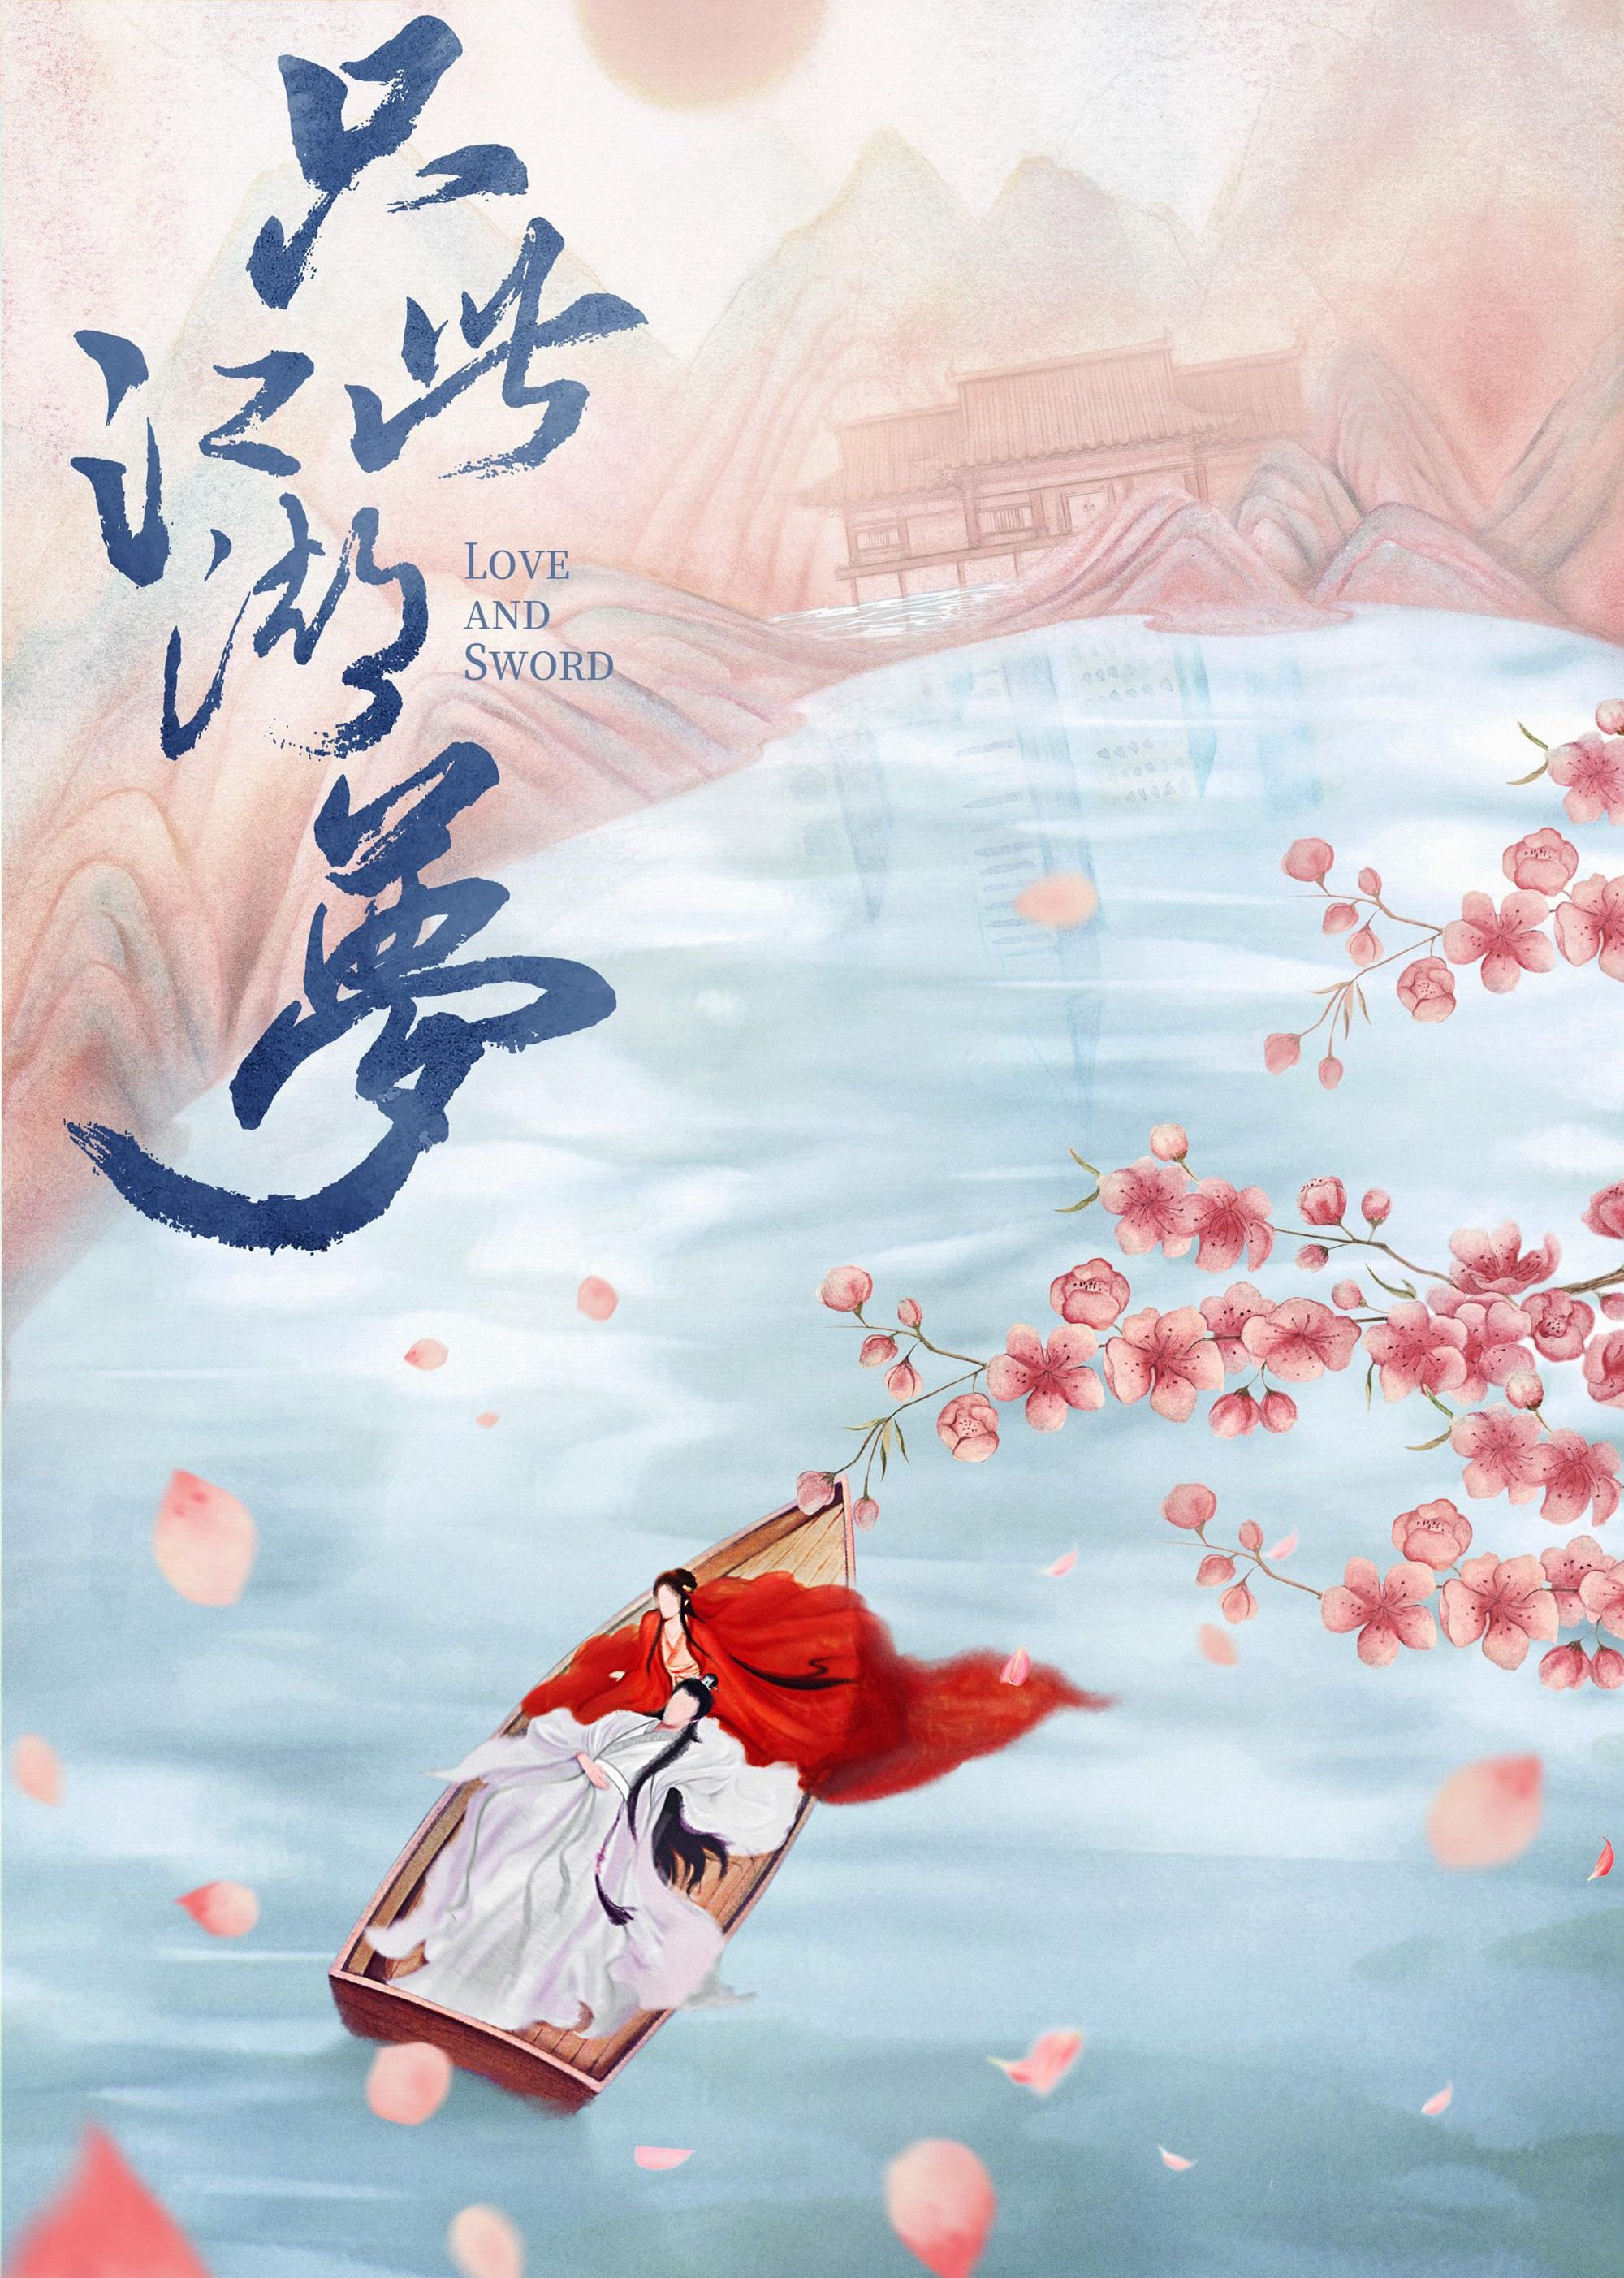 Poster Phim Chỉ Là Giấc Mộng Giang Hồ (Love and Sword)